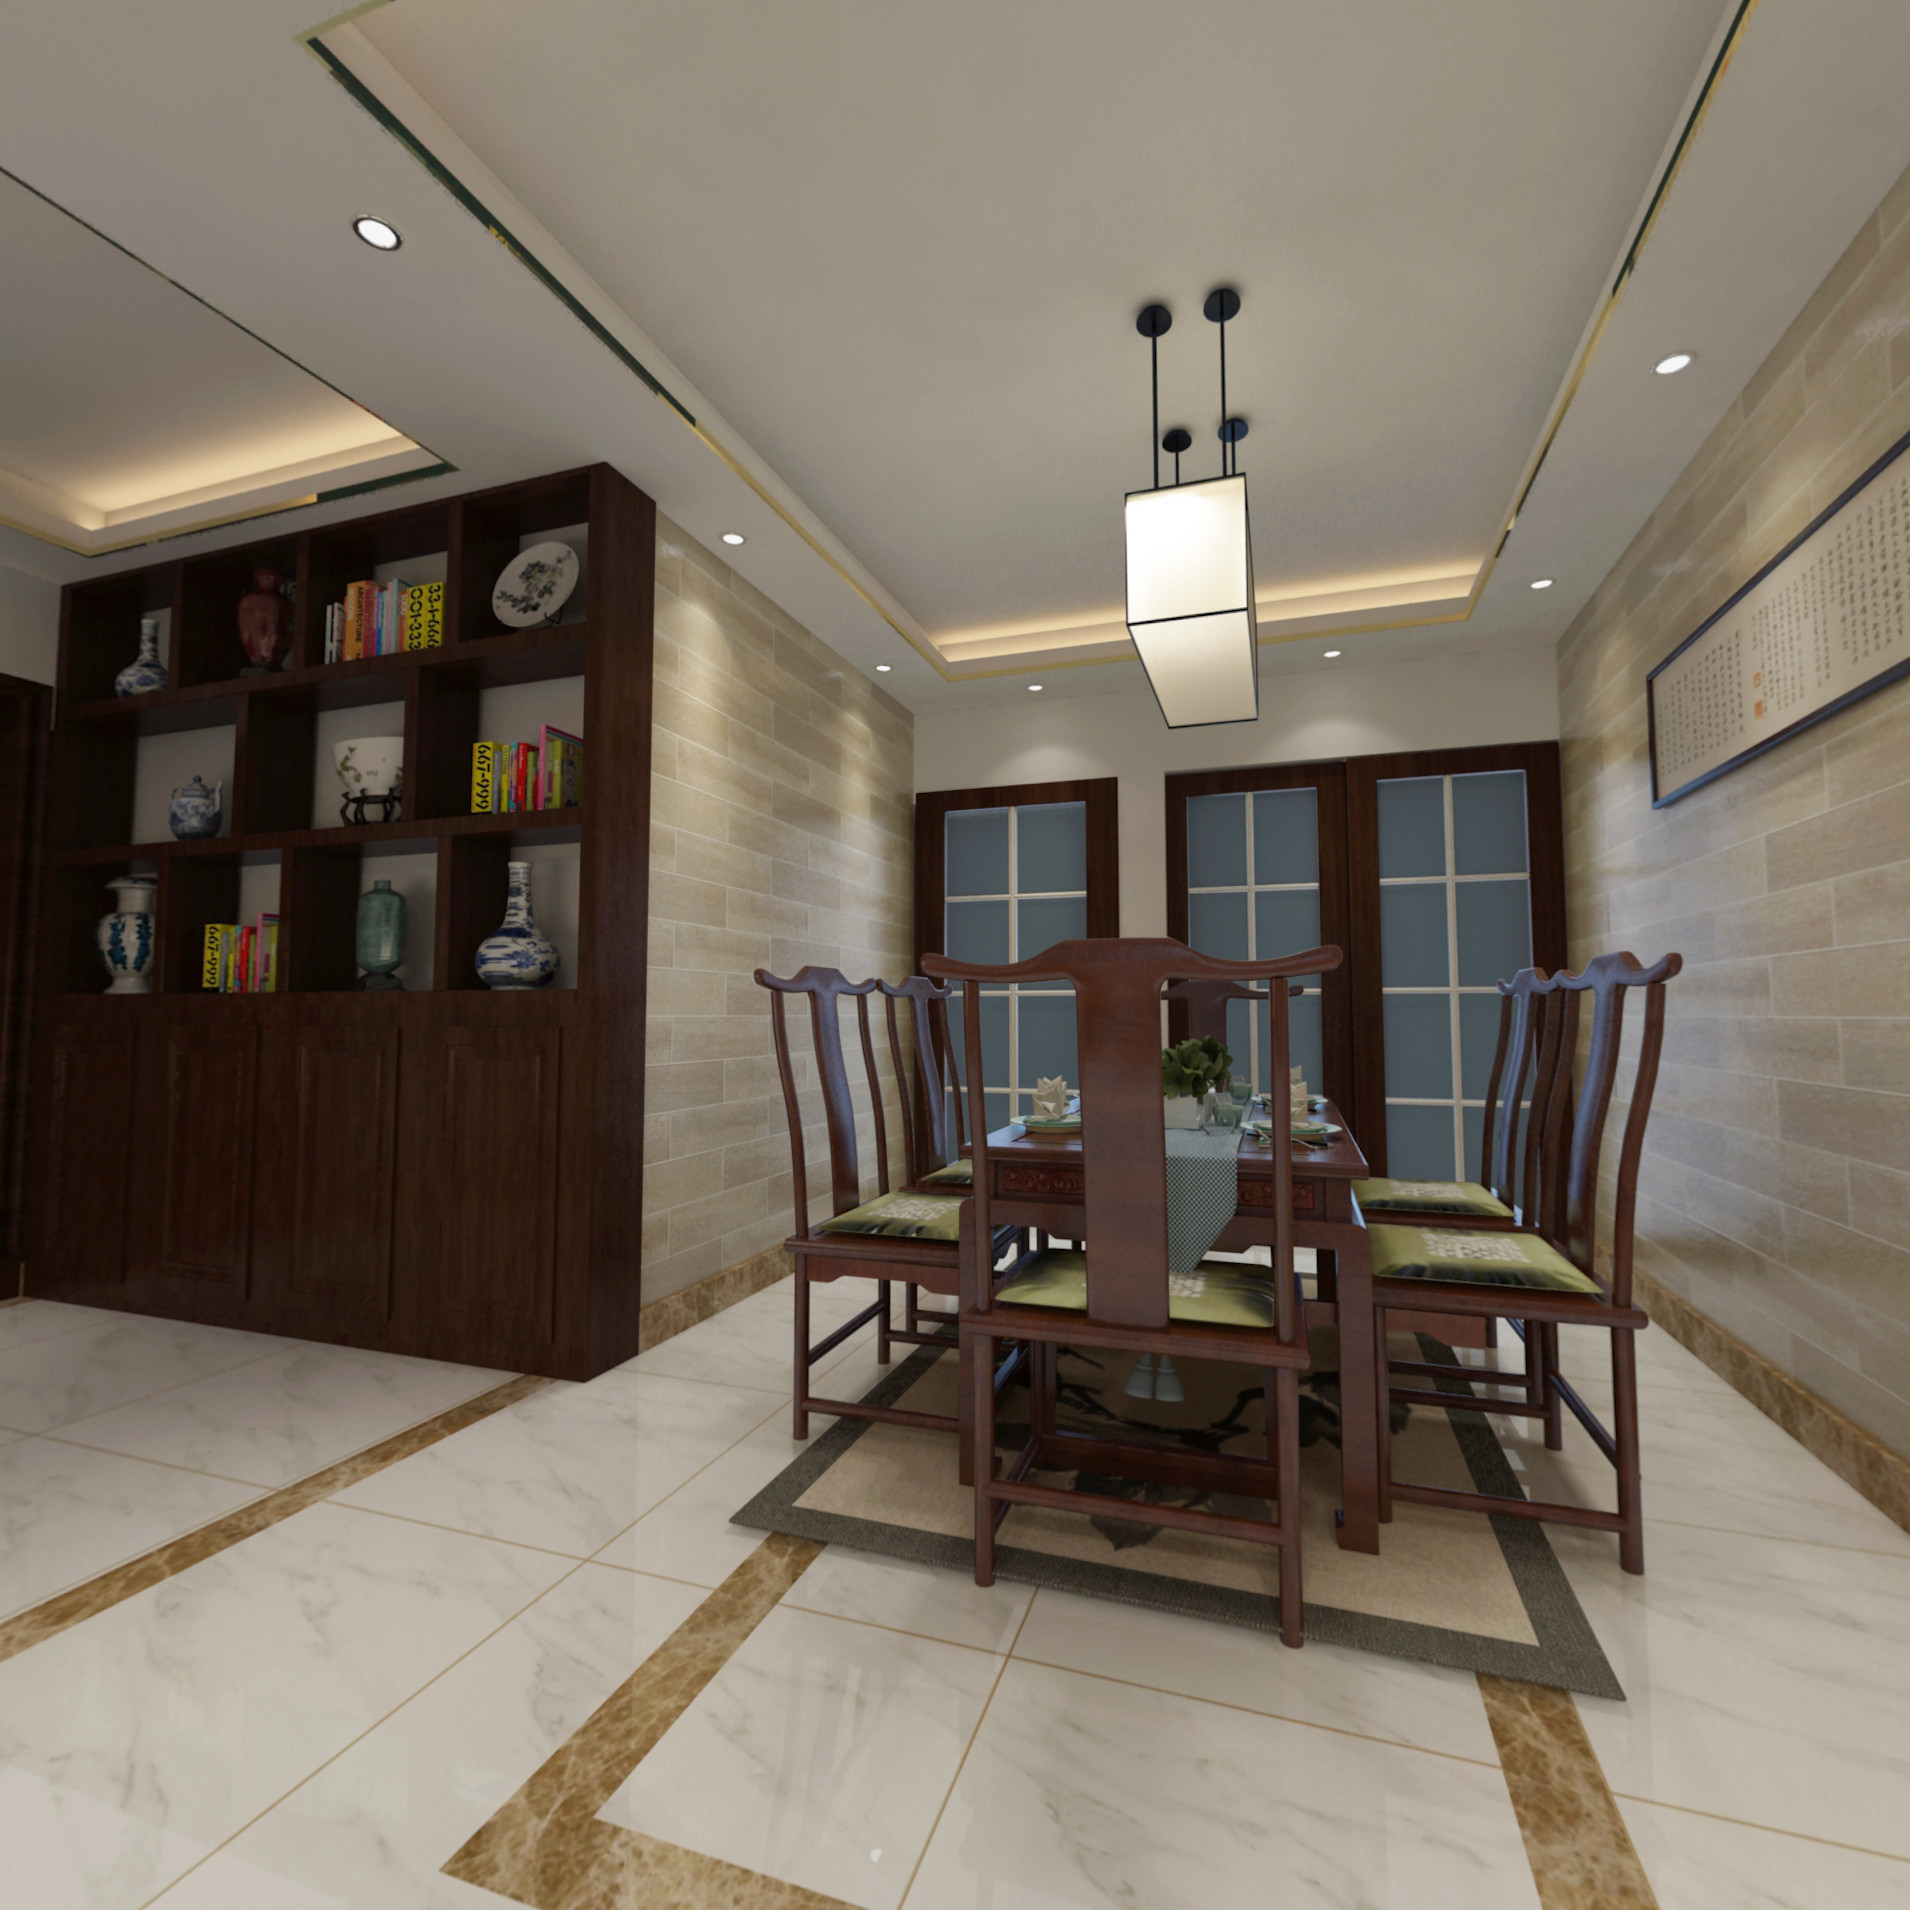 金域世家-新中式 - 中式风格三室两厅装修效果图 - 王卫强设计效果图 - 每平每屋·设计家